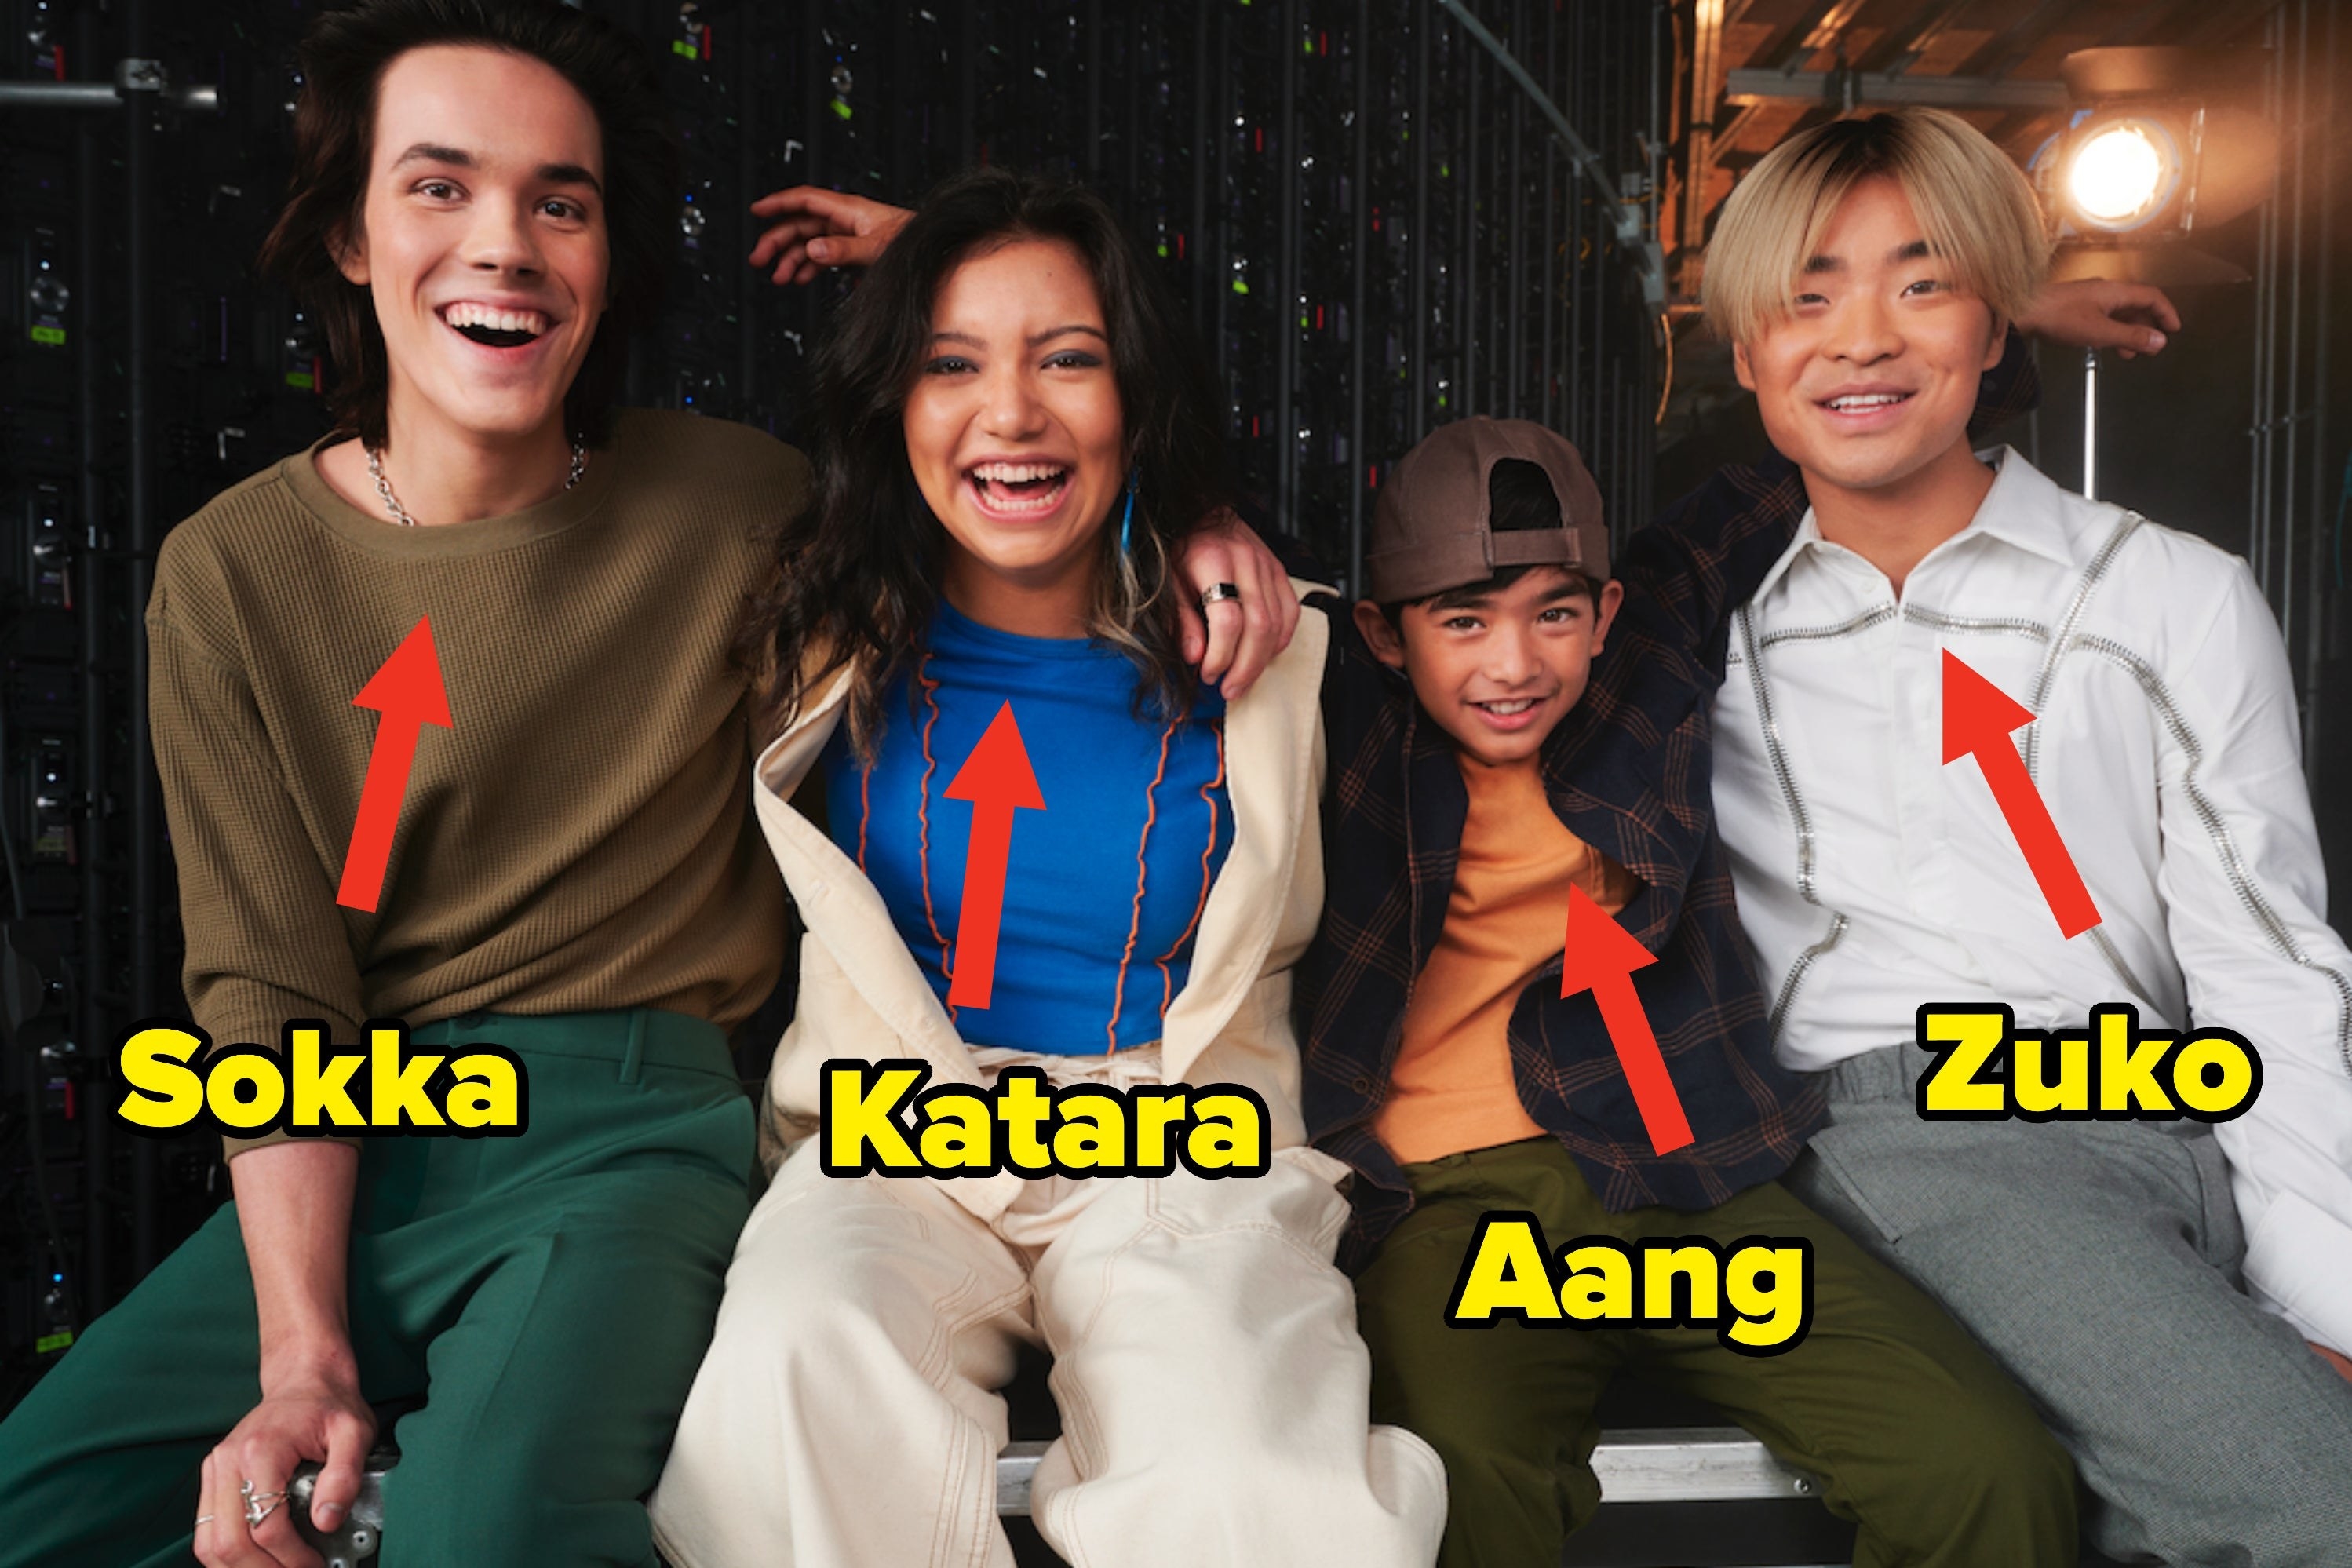 Arrows pointing at the actors playing Sokka, Katara, Aang, and Zuko